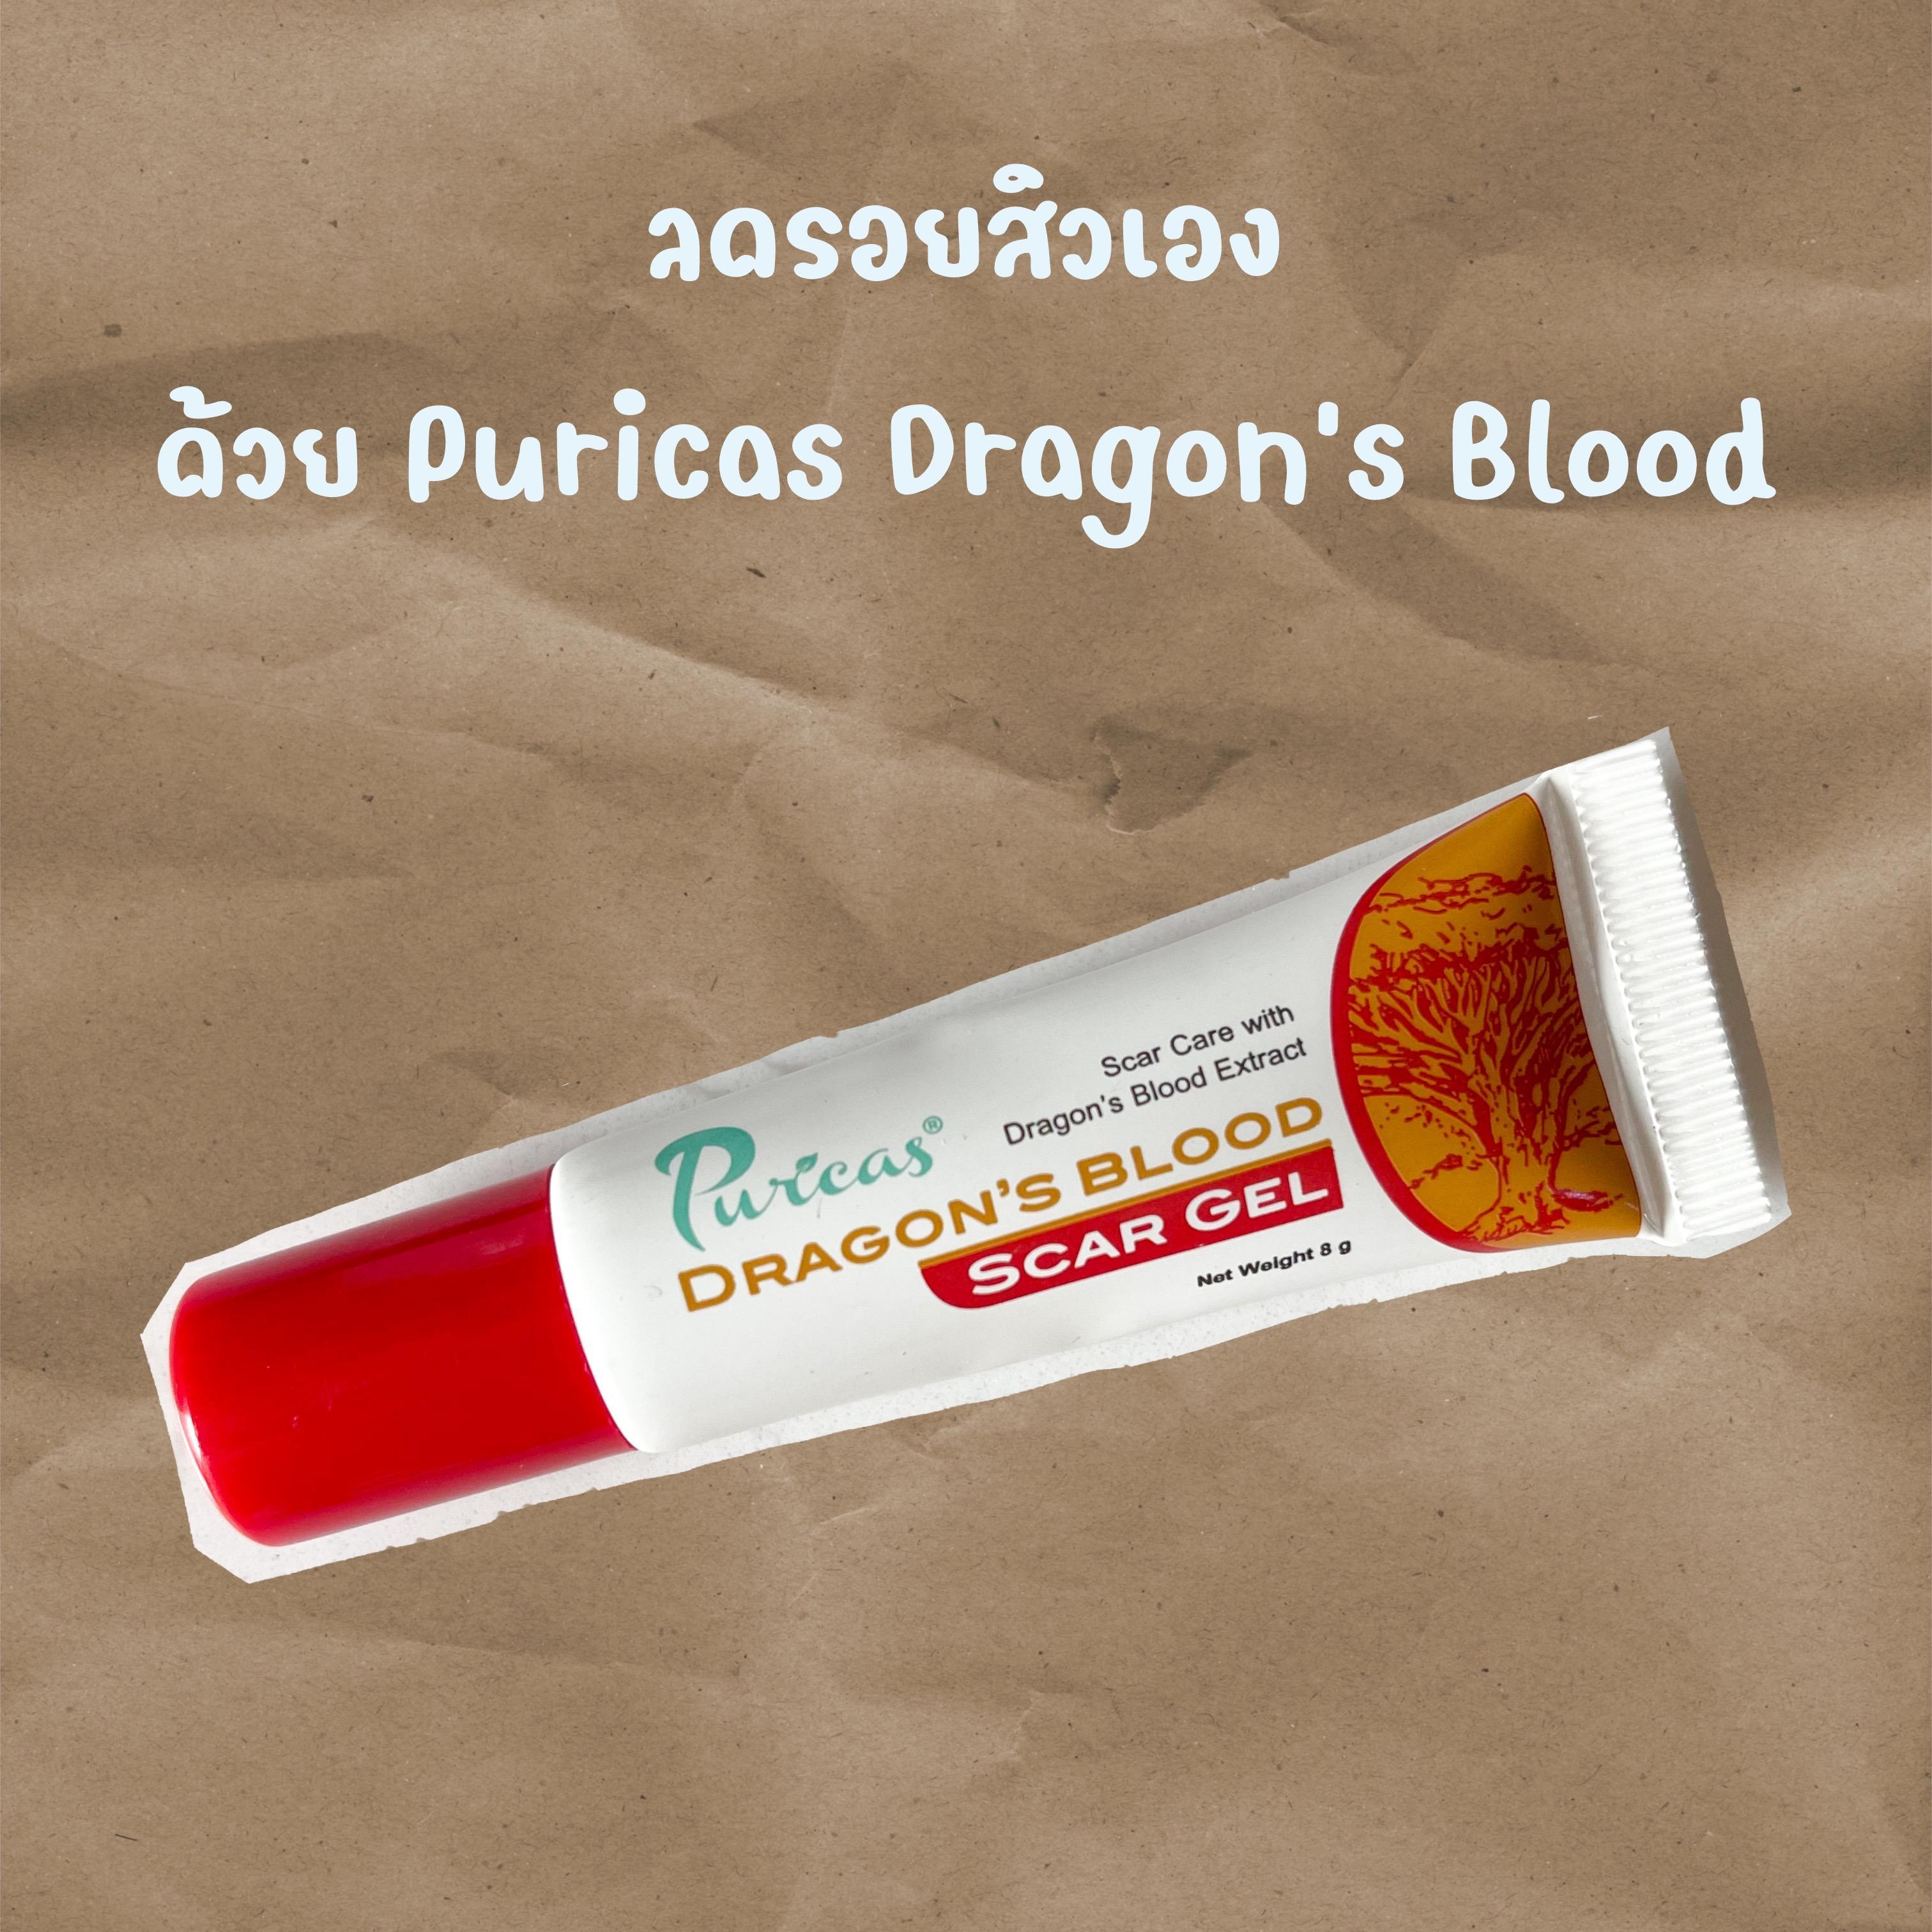 ภาพหน้าปก ลดรอยสิวเองแบบไม่ต้องพึ่งเลเซอร์ … Puricas Dragon's Blood เห็นผลดี ราคาสบายกระเป๋า ที่:0